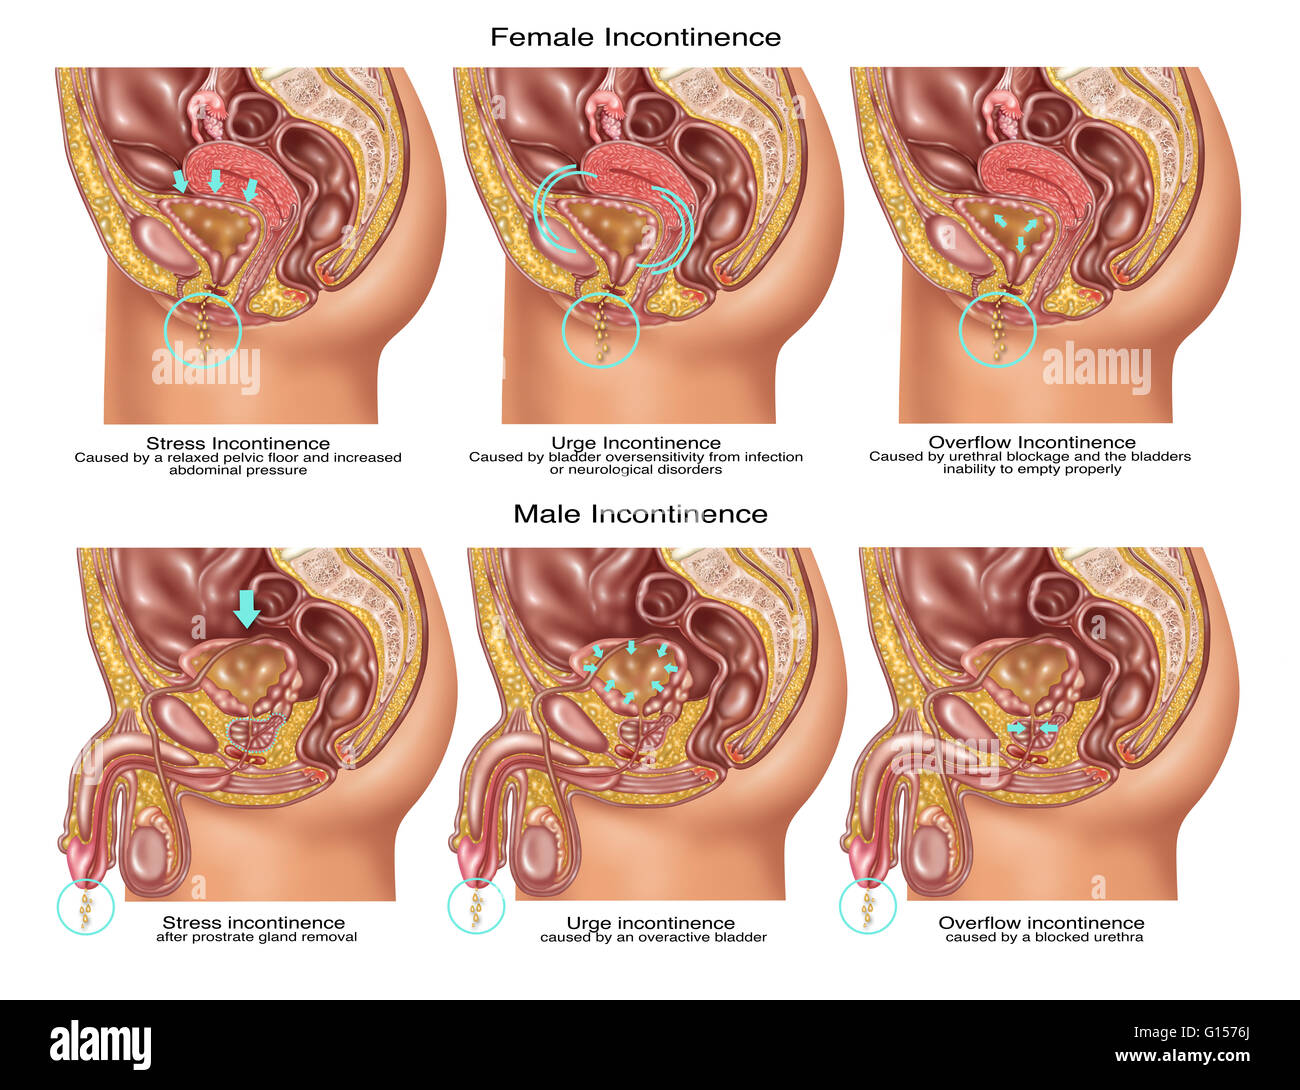 Ilustración que muestra tres tipos de incontinencia: (de izquierda a  derecha) el estrés, instar, e incontinencia por rebosamiento. Los tres  tipos son ilustrados en la anatomía femenina (en la parte superior) y